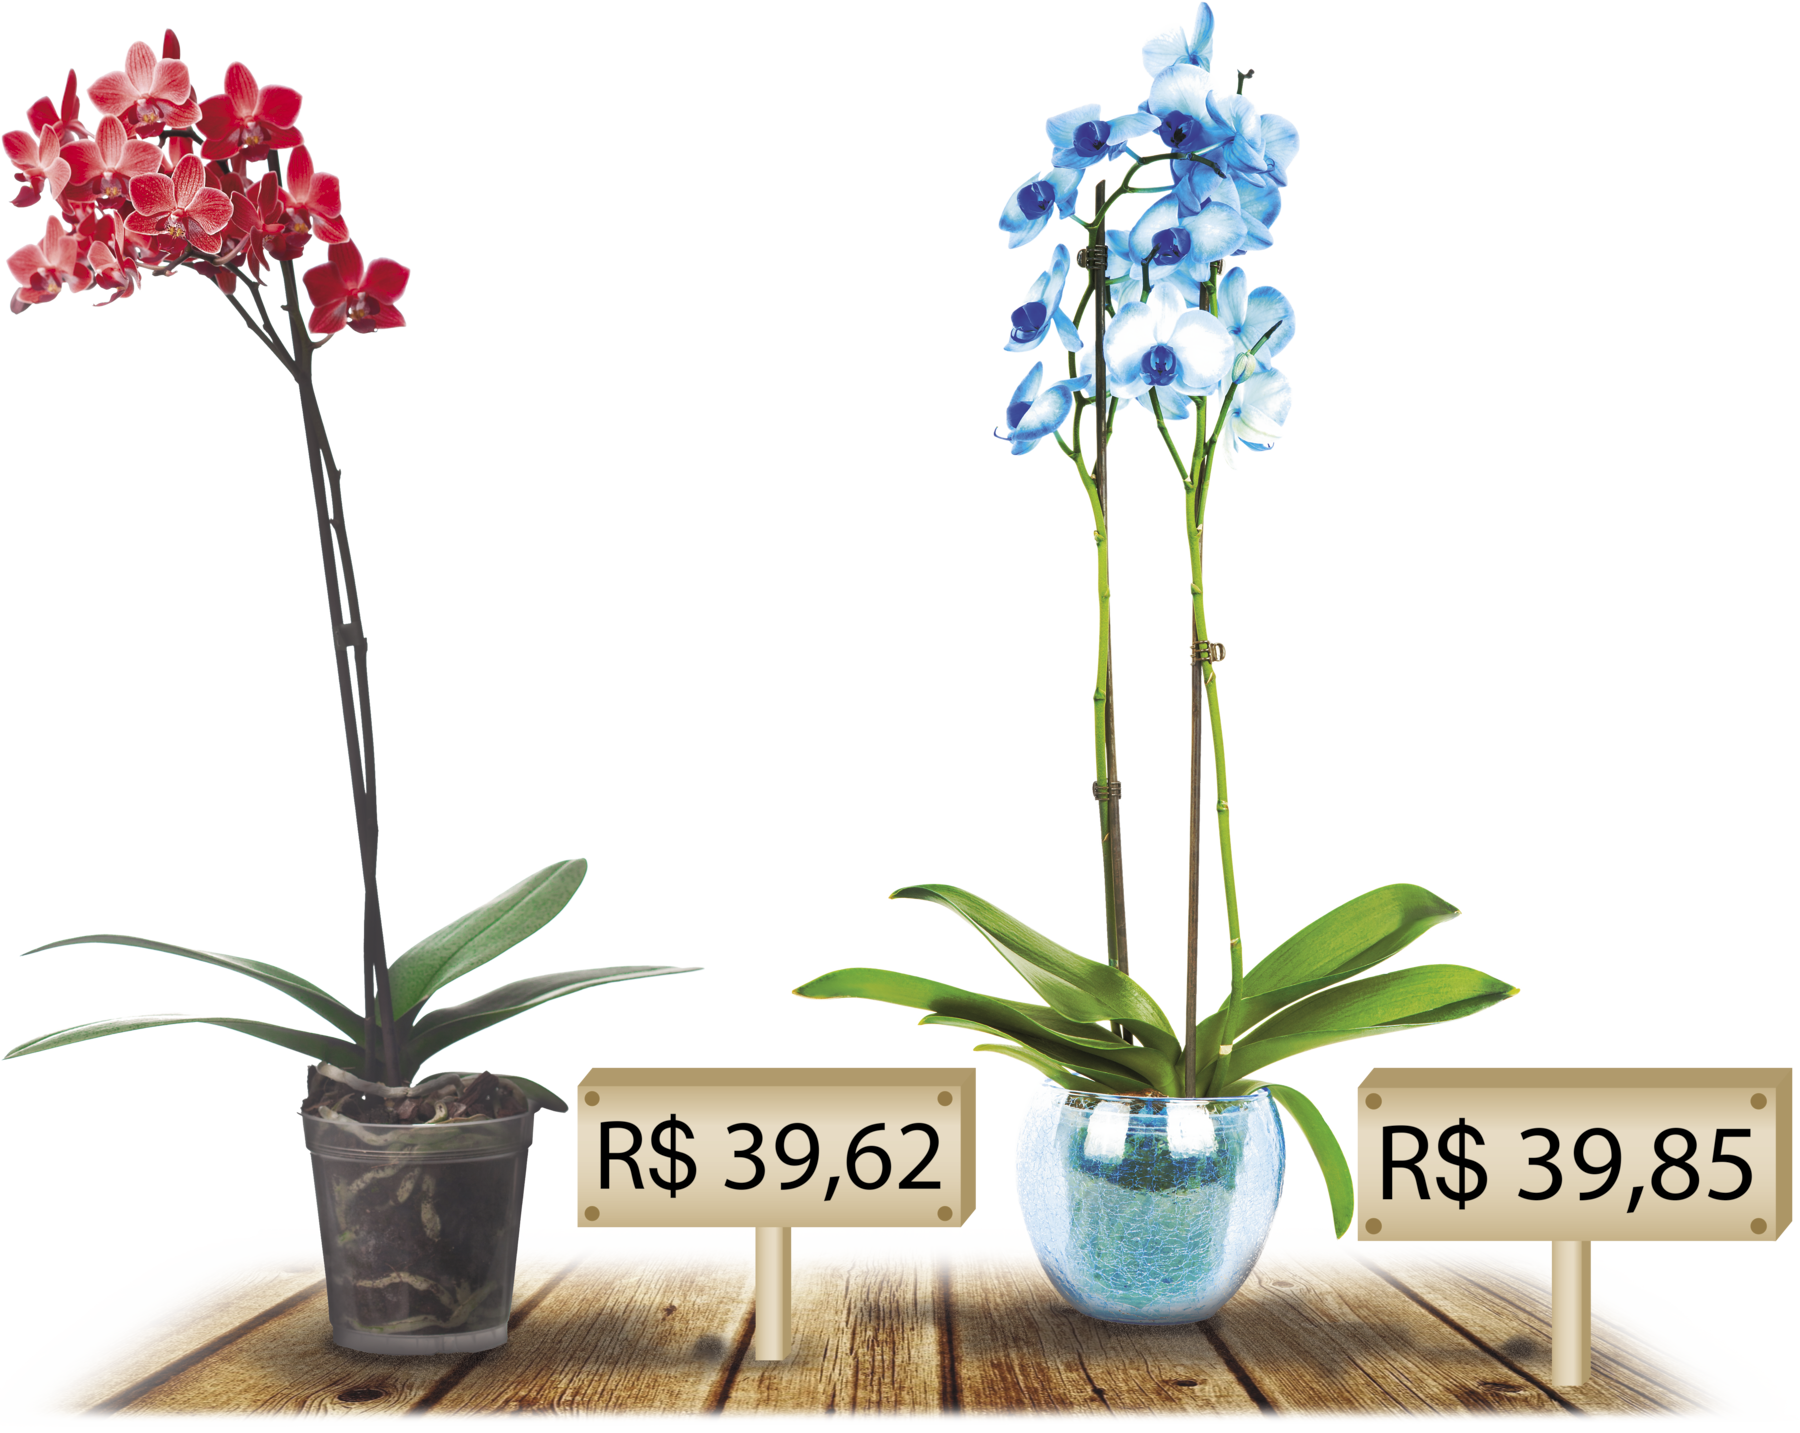 Fotografia. Dois vasos de orquídeas. À esquerda um vaso com orquídea  vermelha e uma placa com o preço de 39 reais e 62 centavos. À direita um vaso com uma orquídea azul e o preço de 39 reais e 85 centavos.